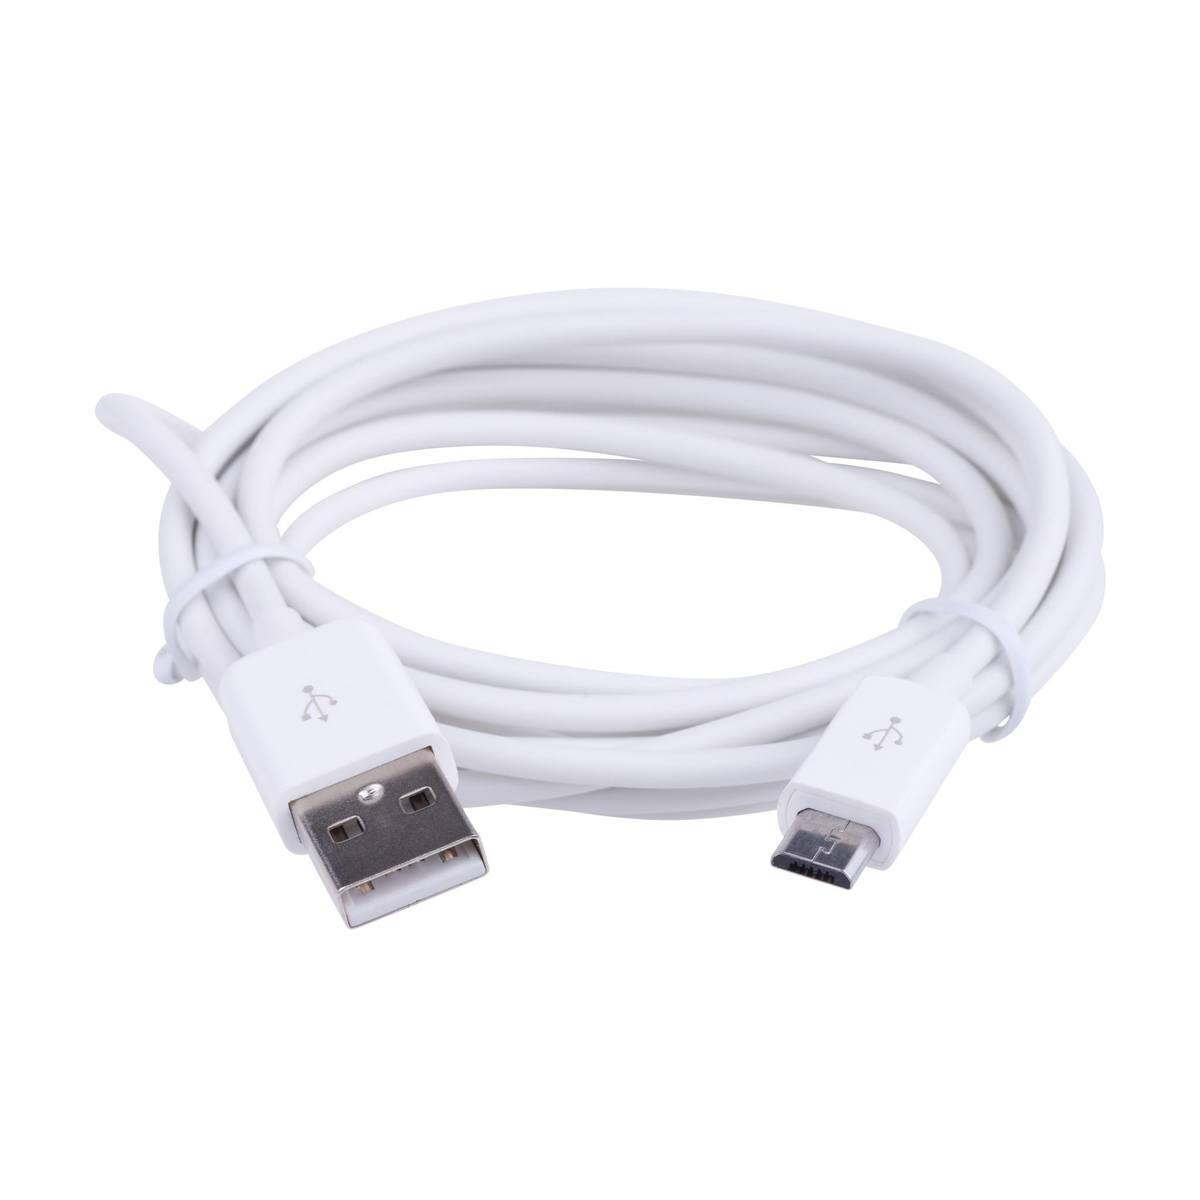 Mikro USB - 2 m kabel, Hvid